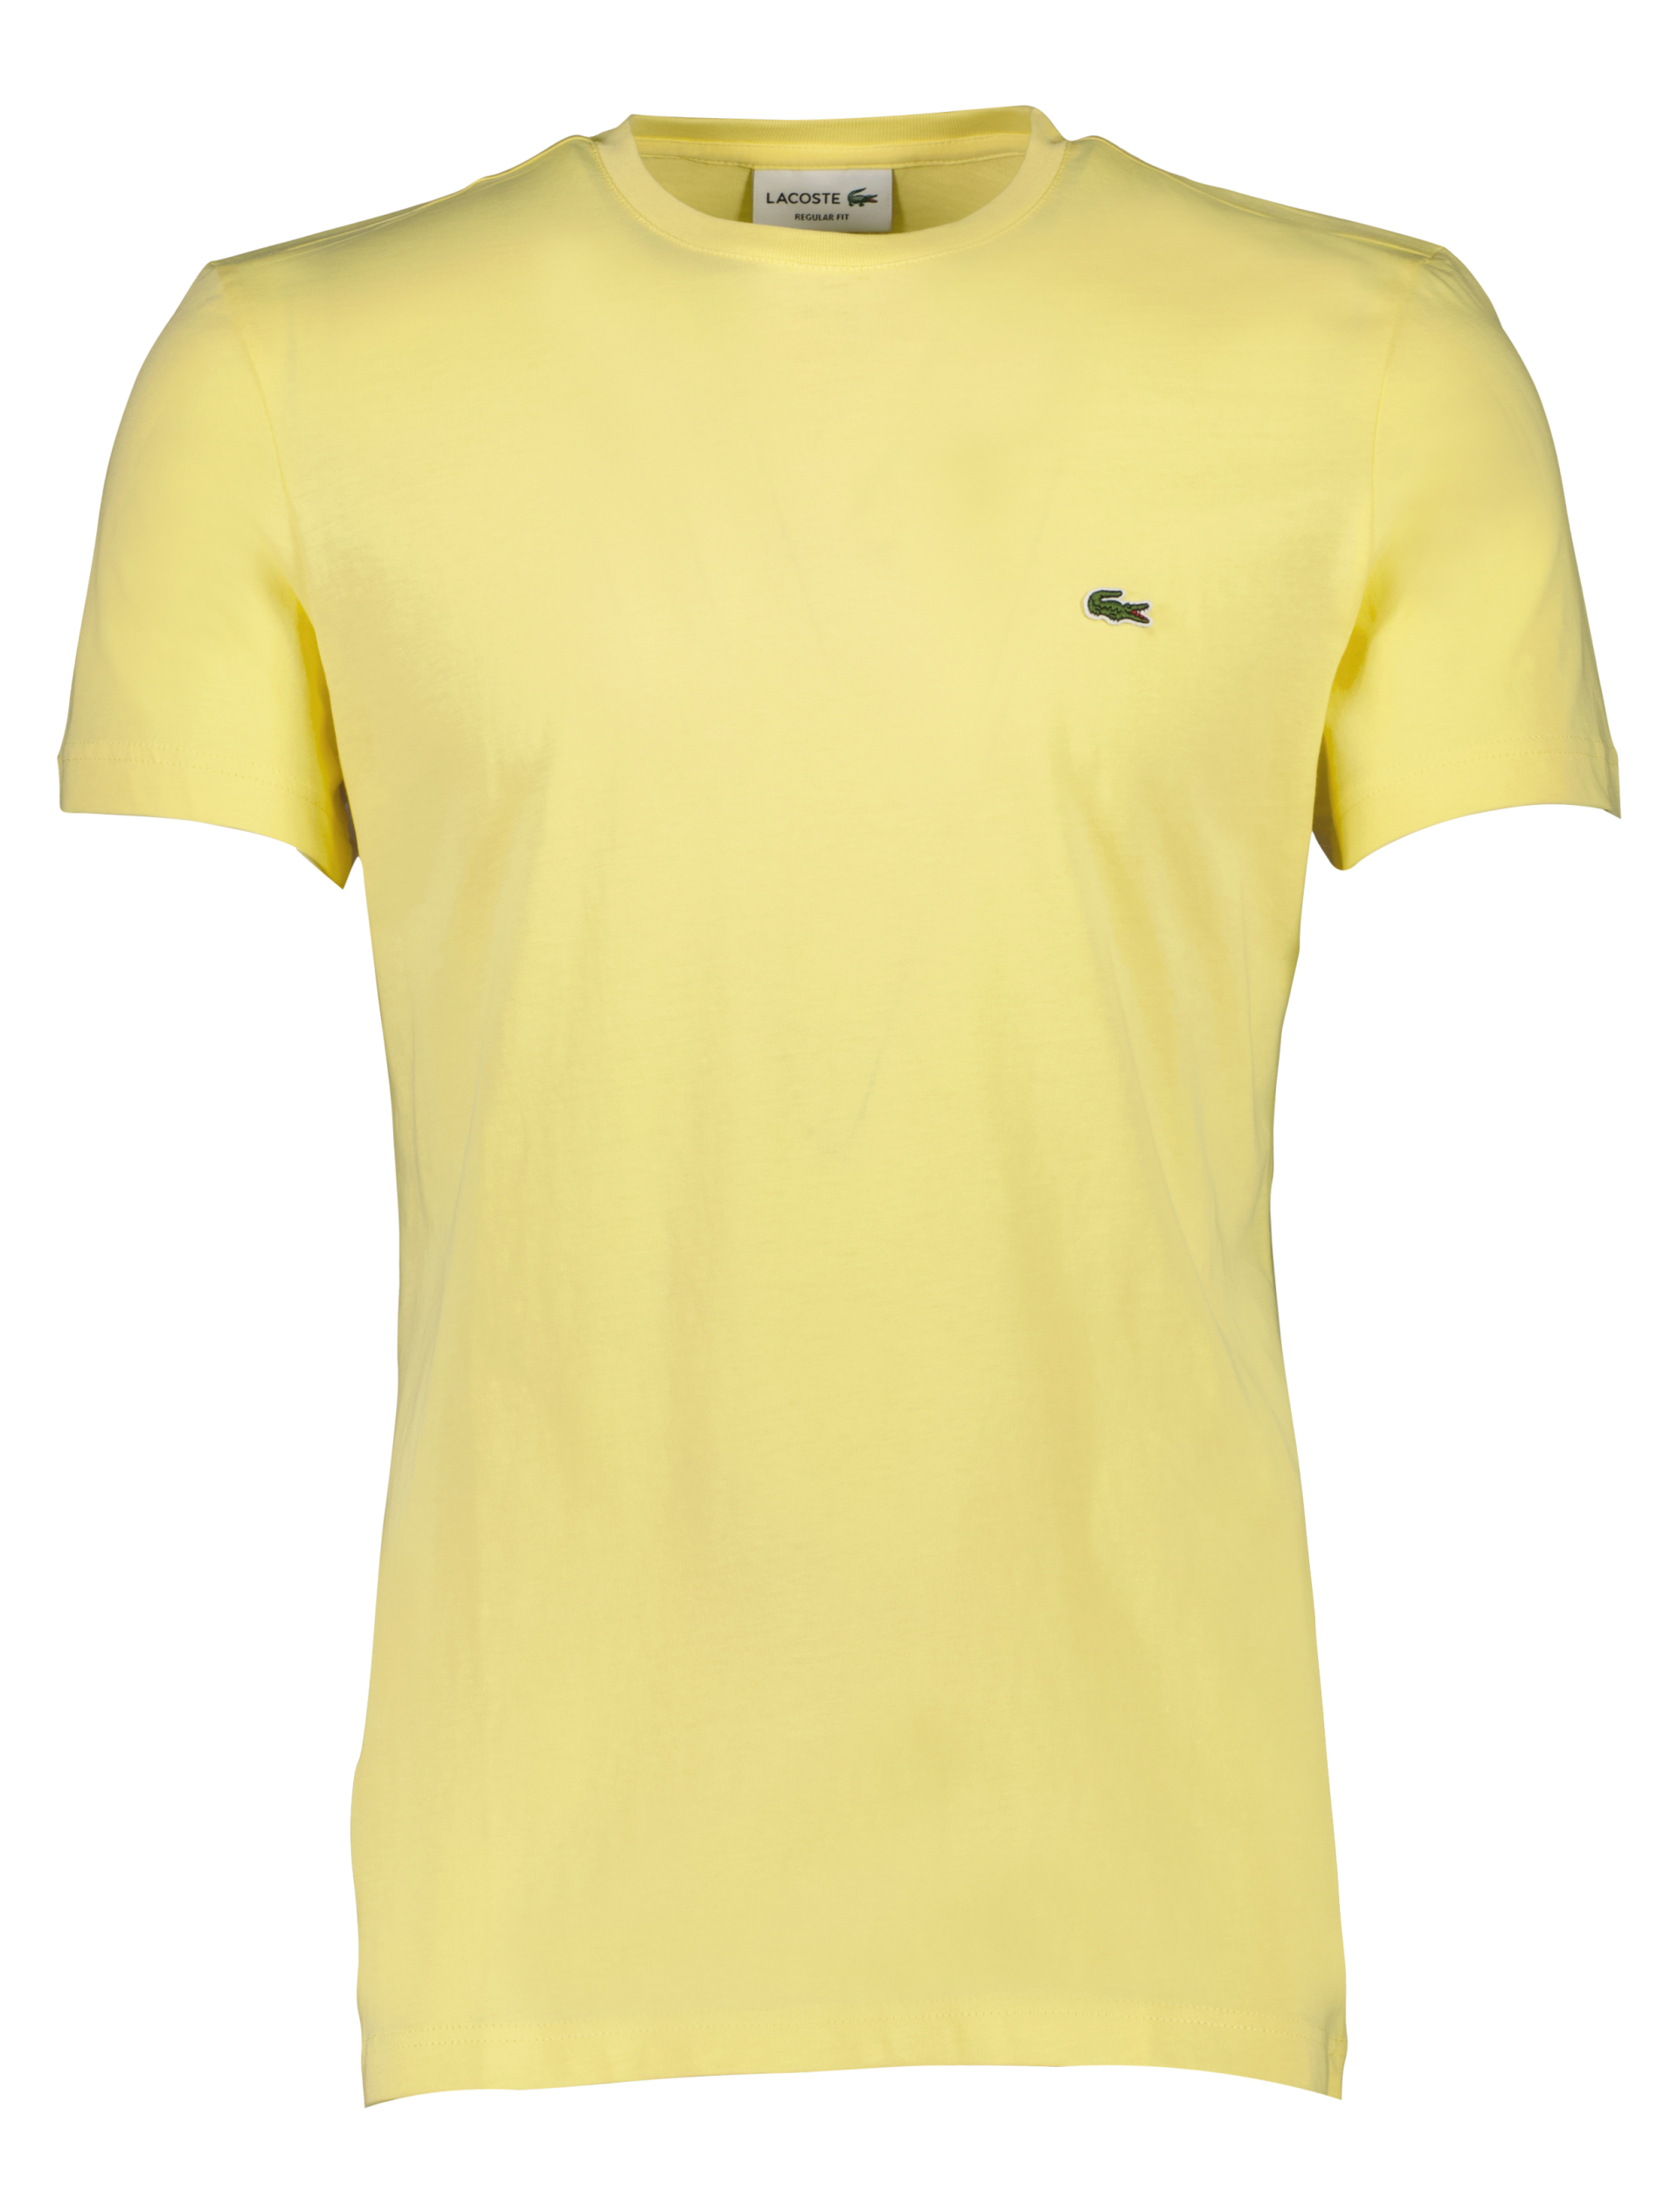 Lacoste T-shirt gul / 107 yellow